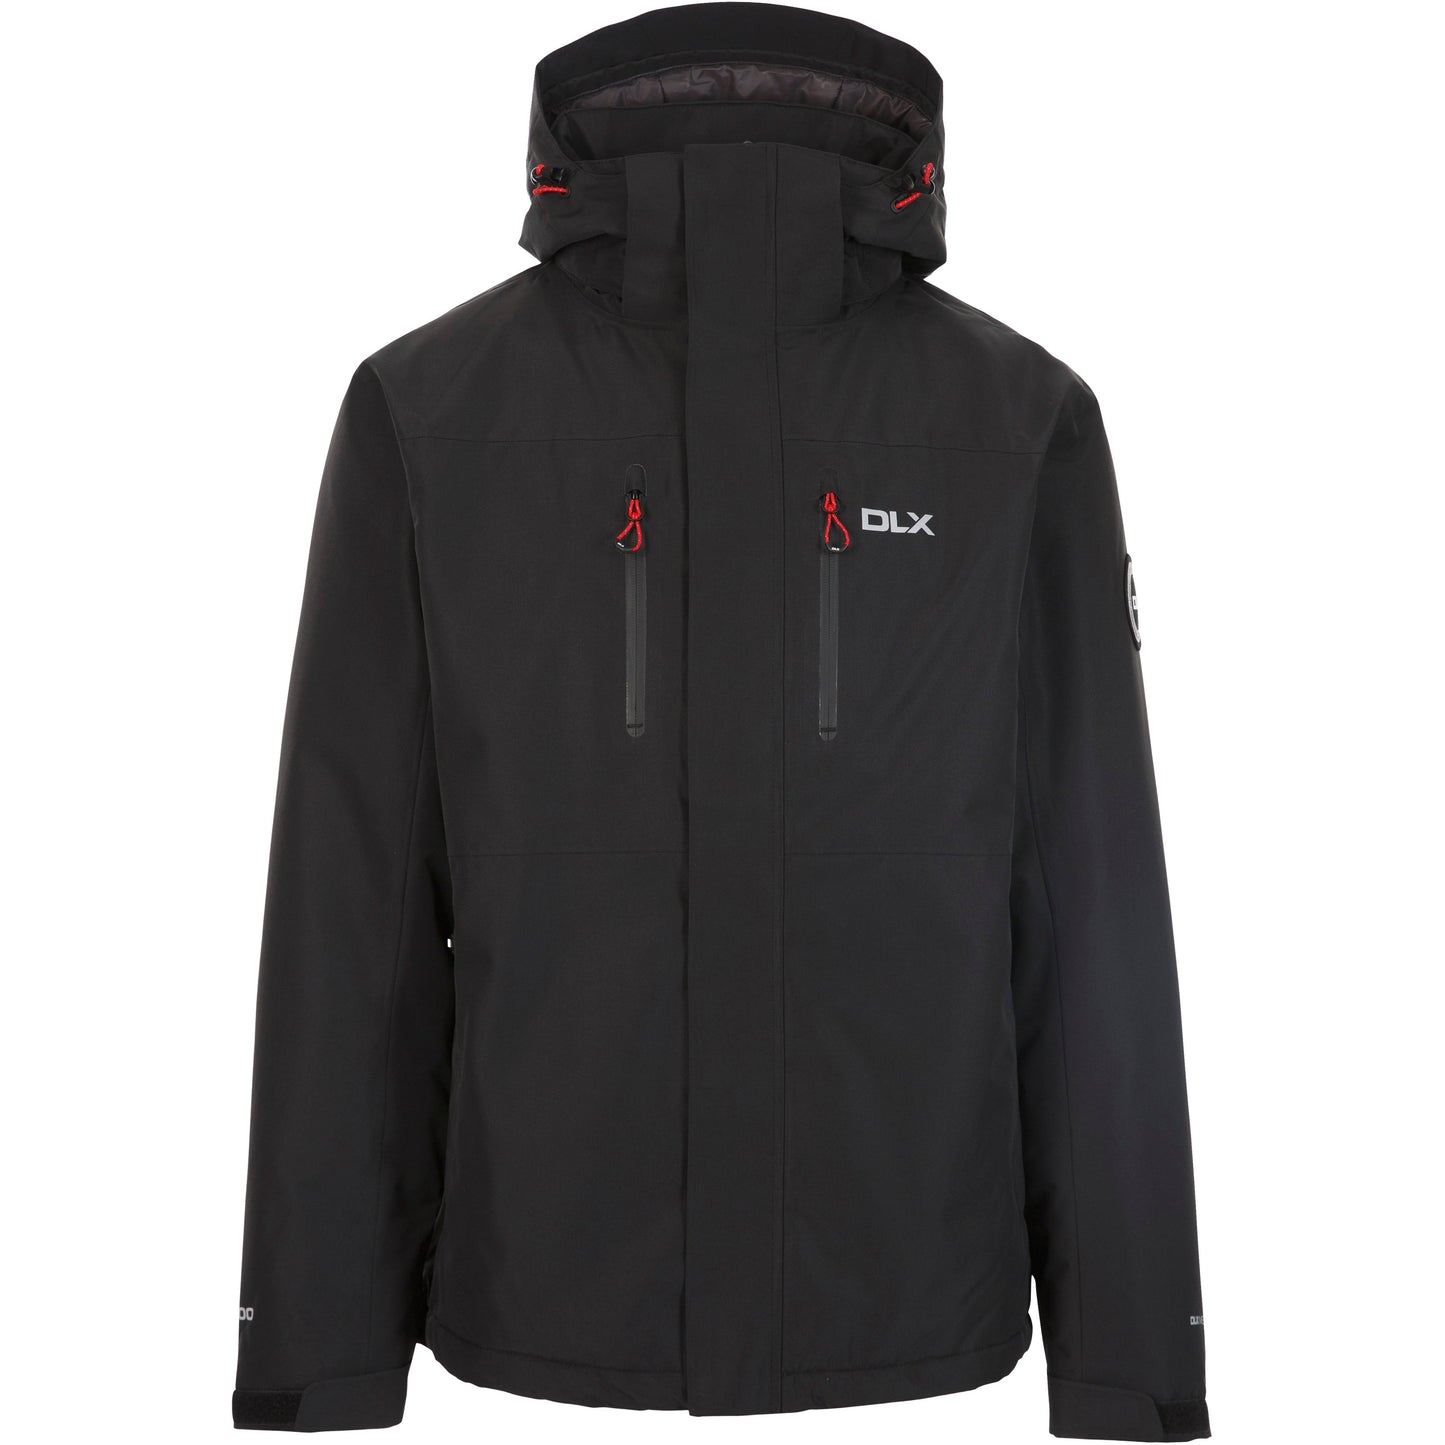 Oswarm Men's DLX Padded Waterproof Jacket in Black